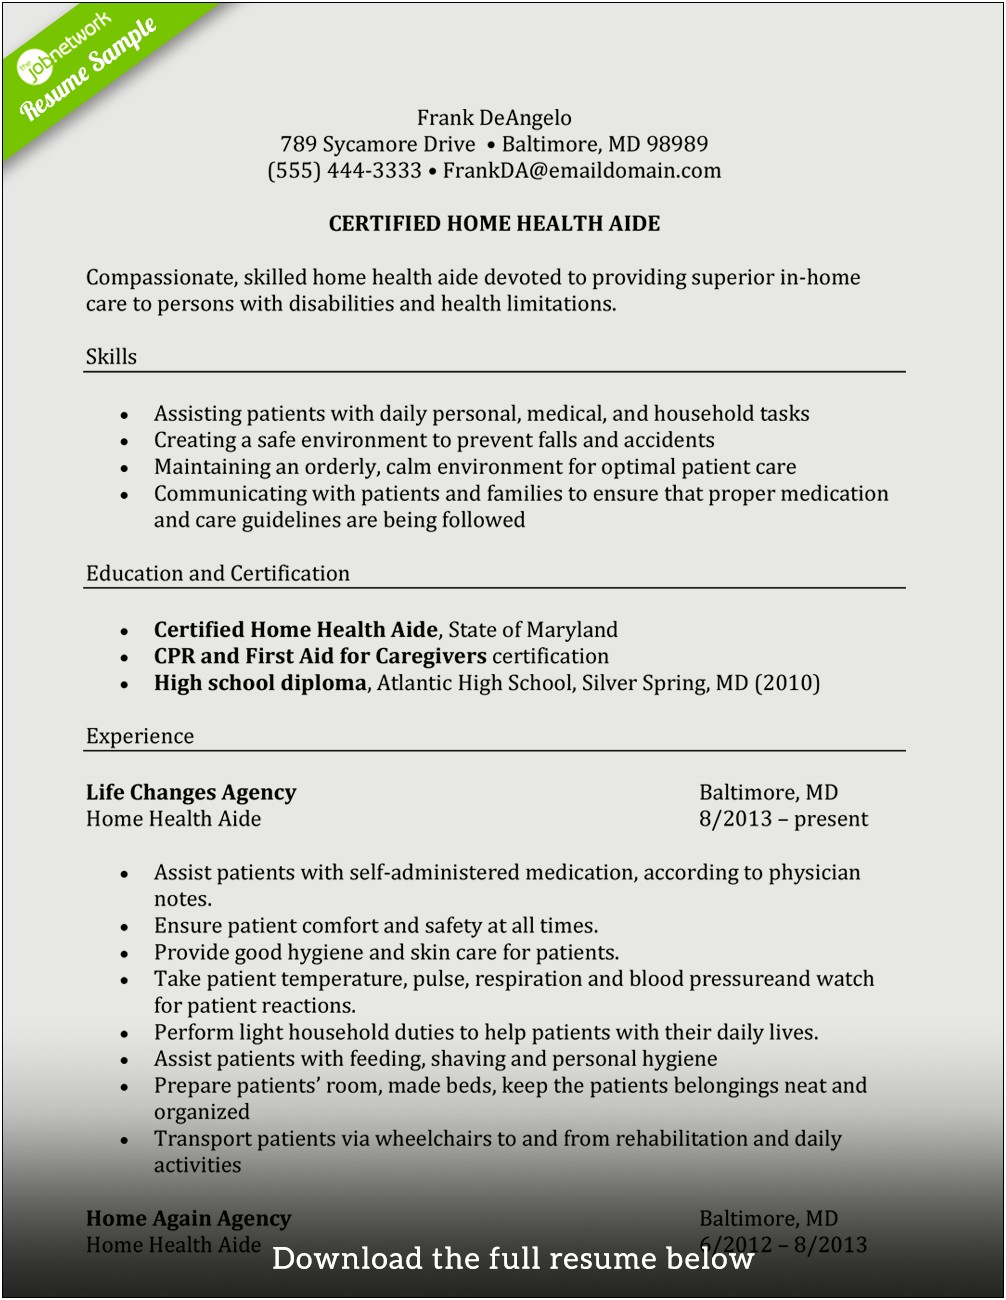 Sample Resume For Caregiver Position